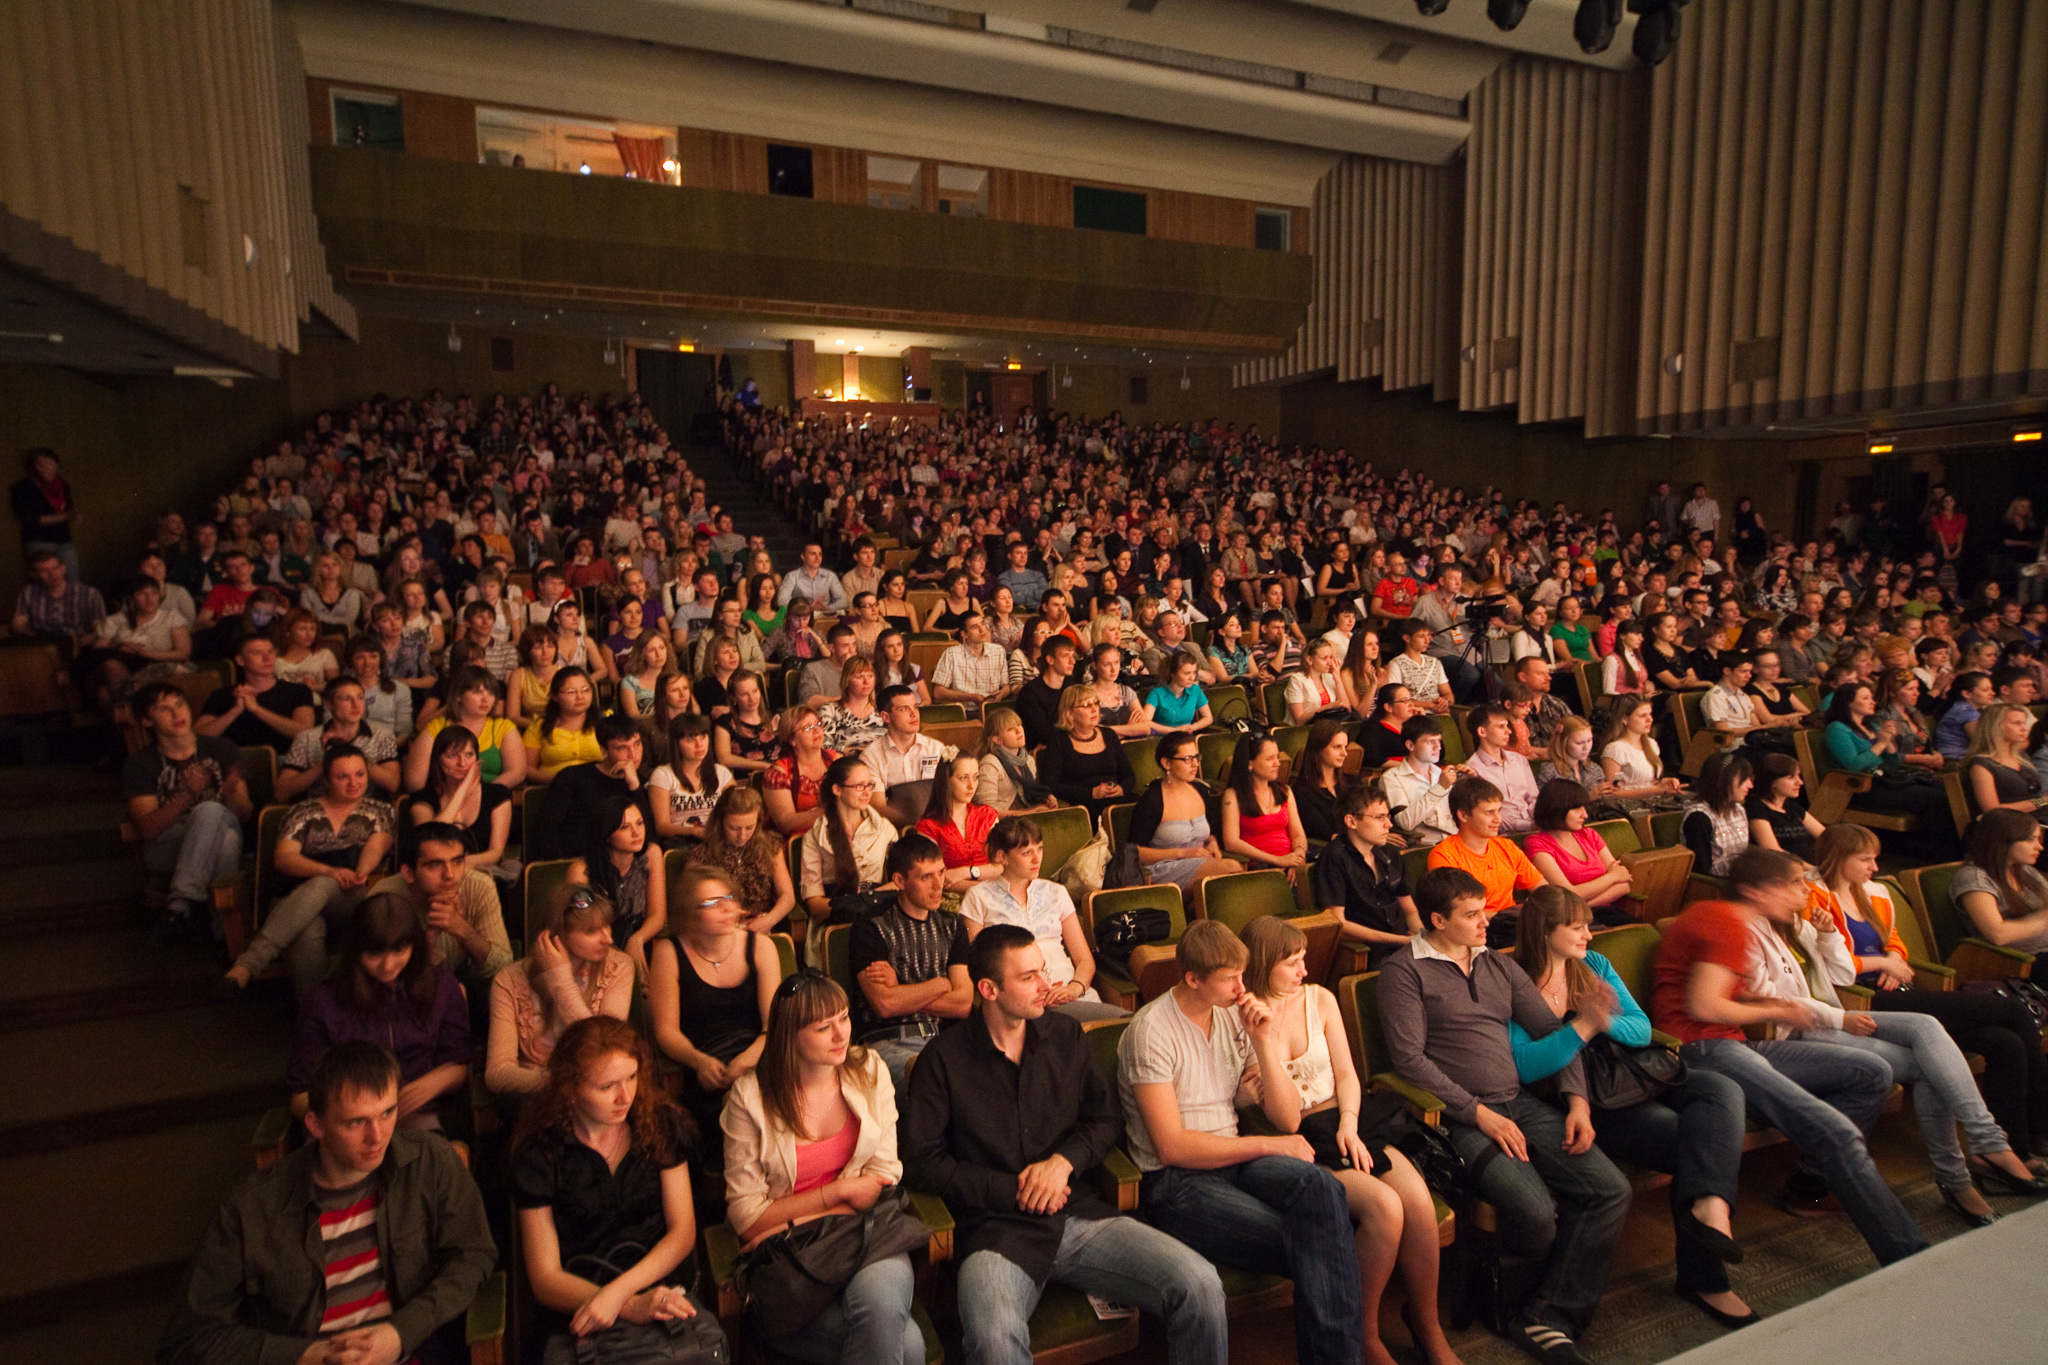 Театр со зрителями. Зрители в театре. Концертный зал с людьми. Зрительный зал с людьми. Зрительный зал со зрителями.